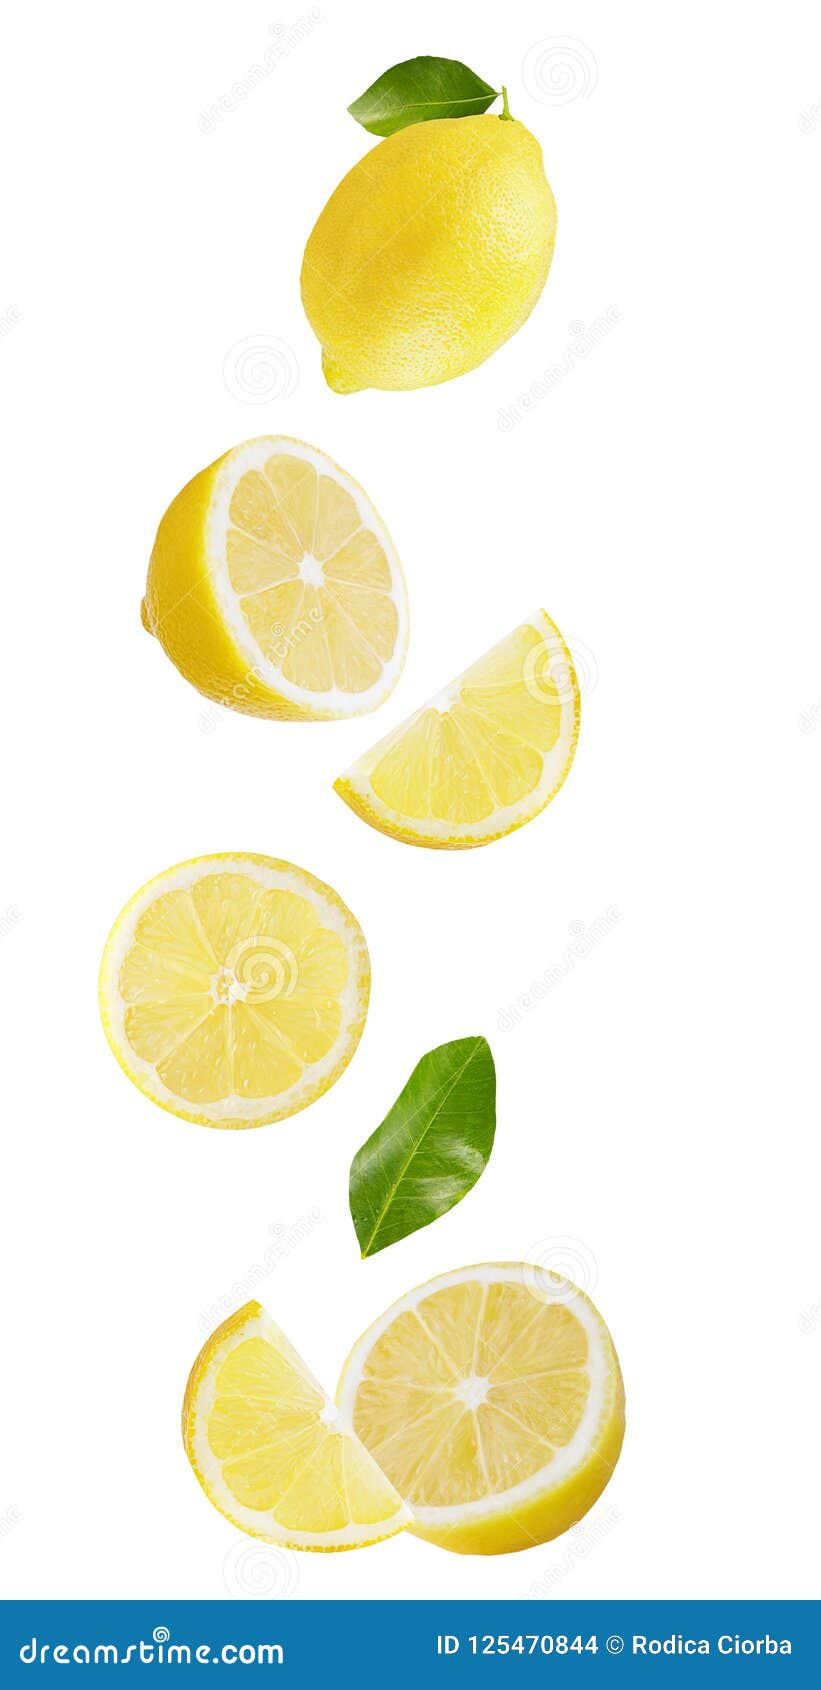 Falling Lemon Isolated on White Background Stock Photo - Image of ...